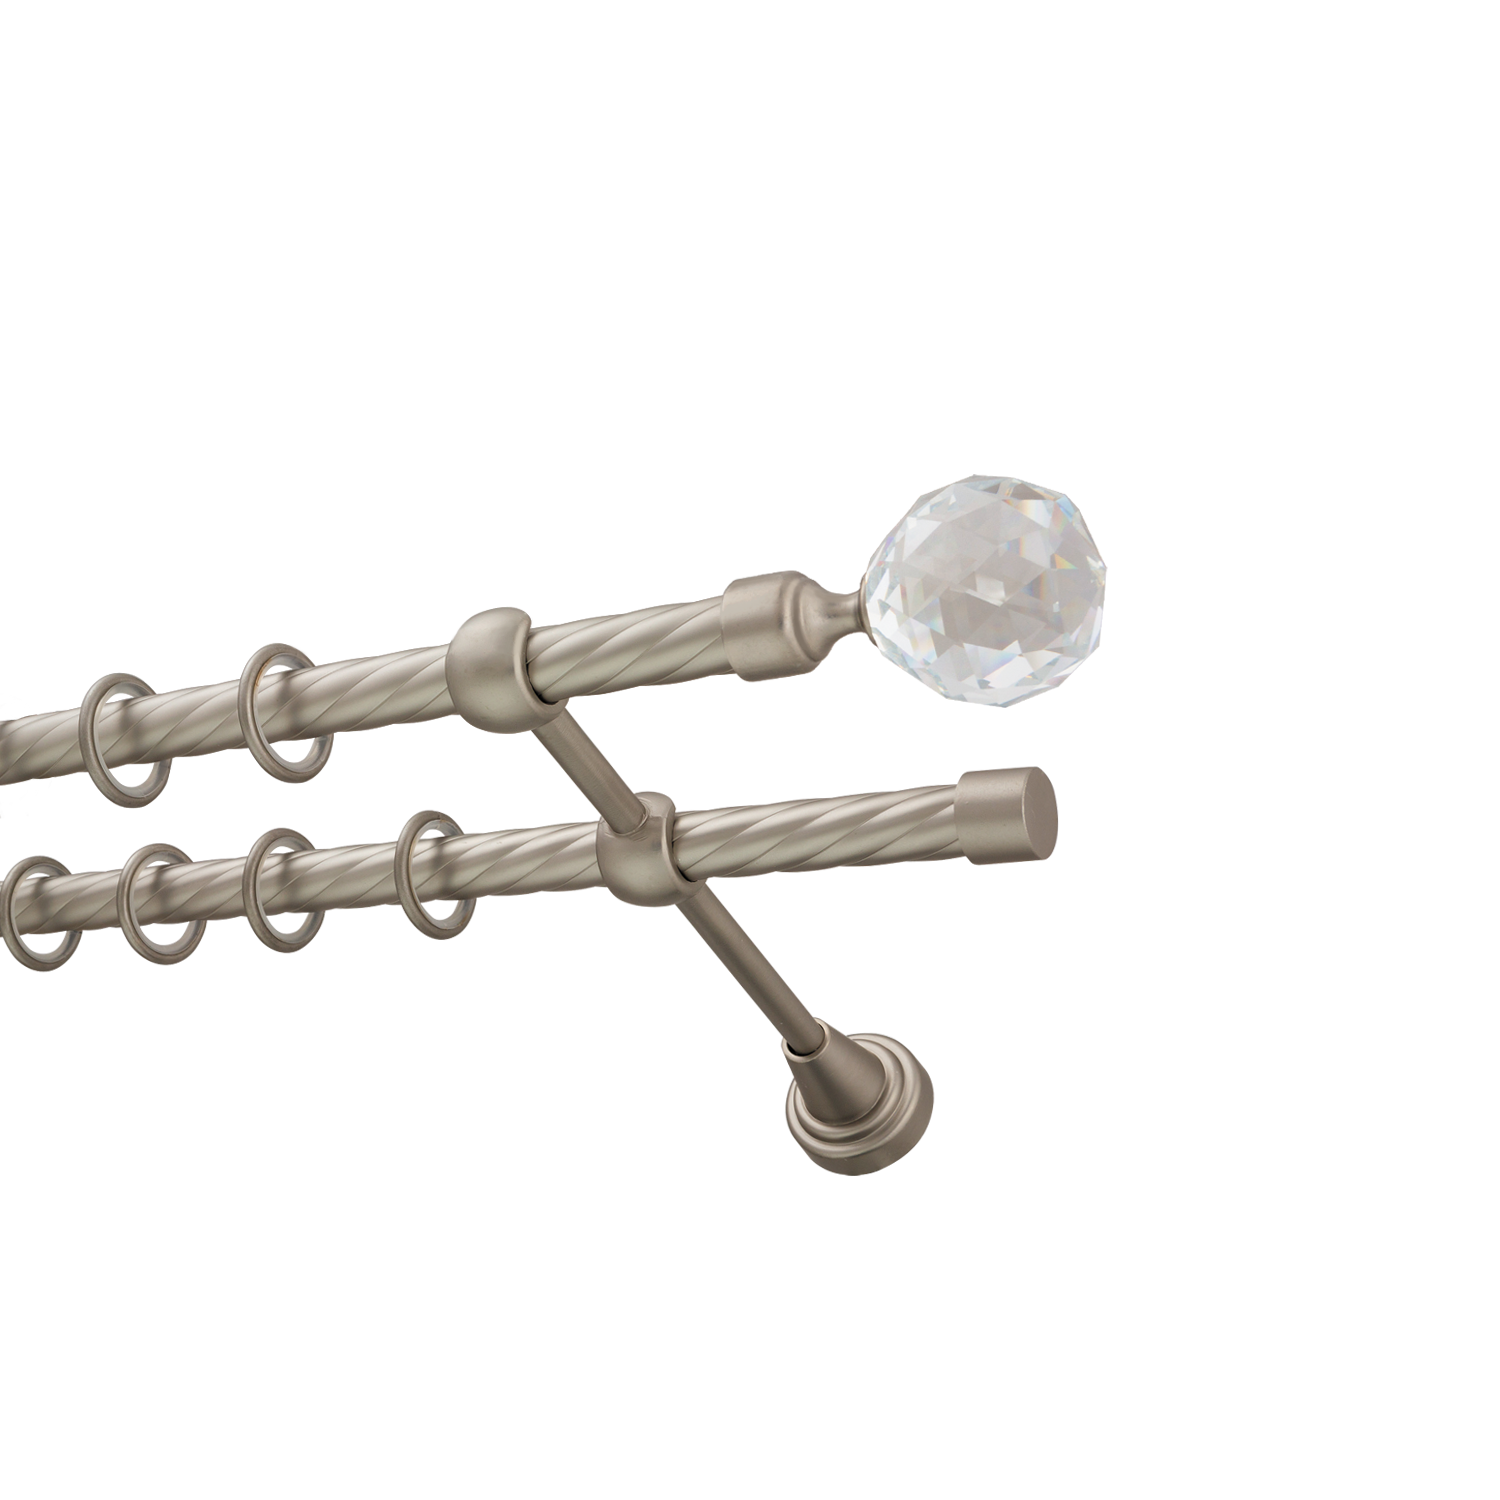 Металлический карниз для штор Карат, двухрядный 16/16 мм, сталь, витая штанга, длина 200 см - фото Wikidecor.ru